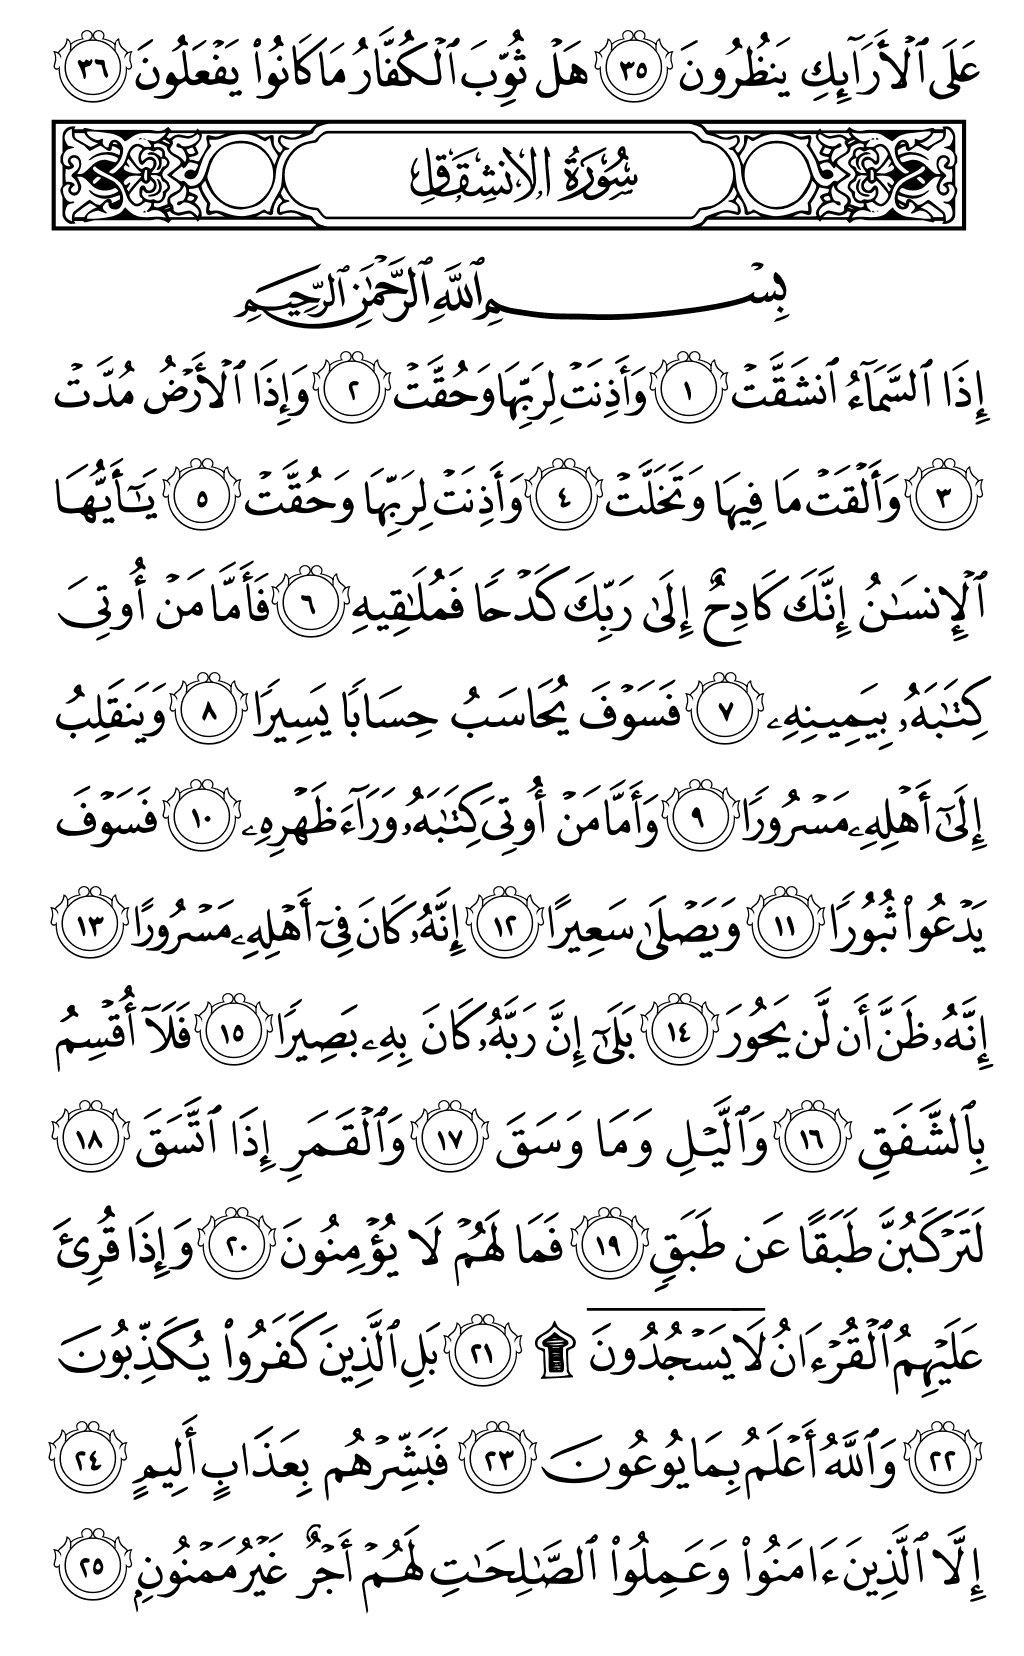 الصفحة رقم 589 من القرآن الكريم